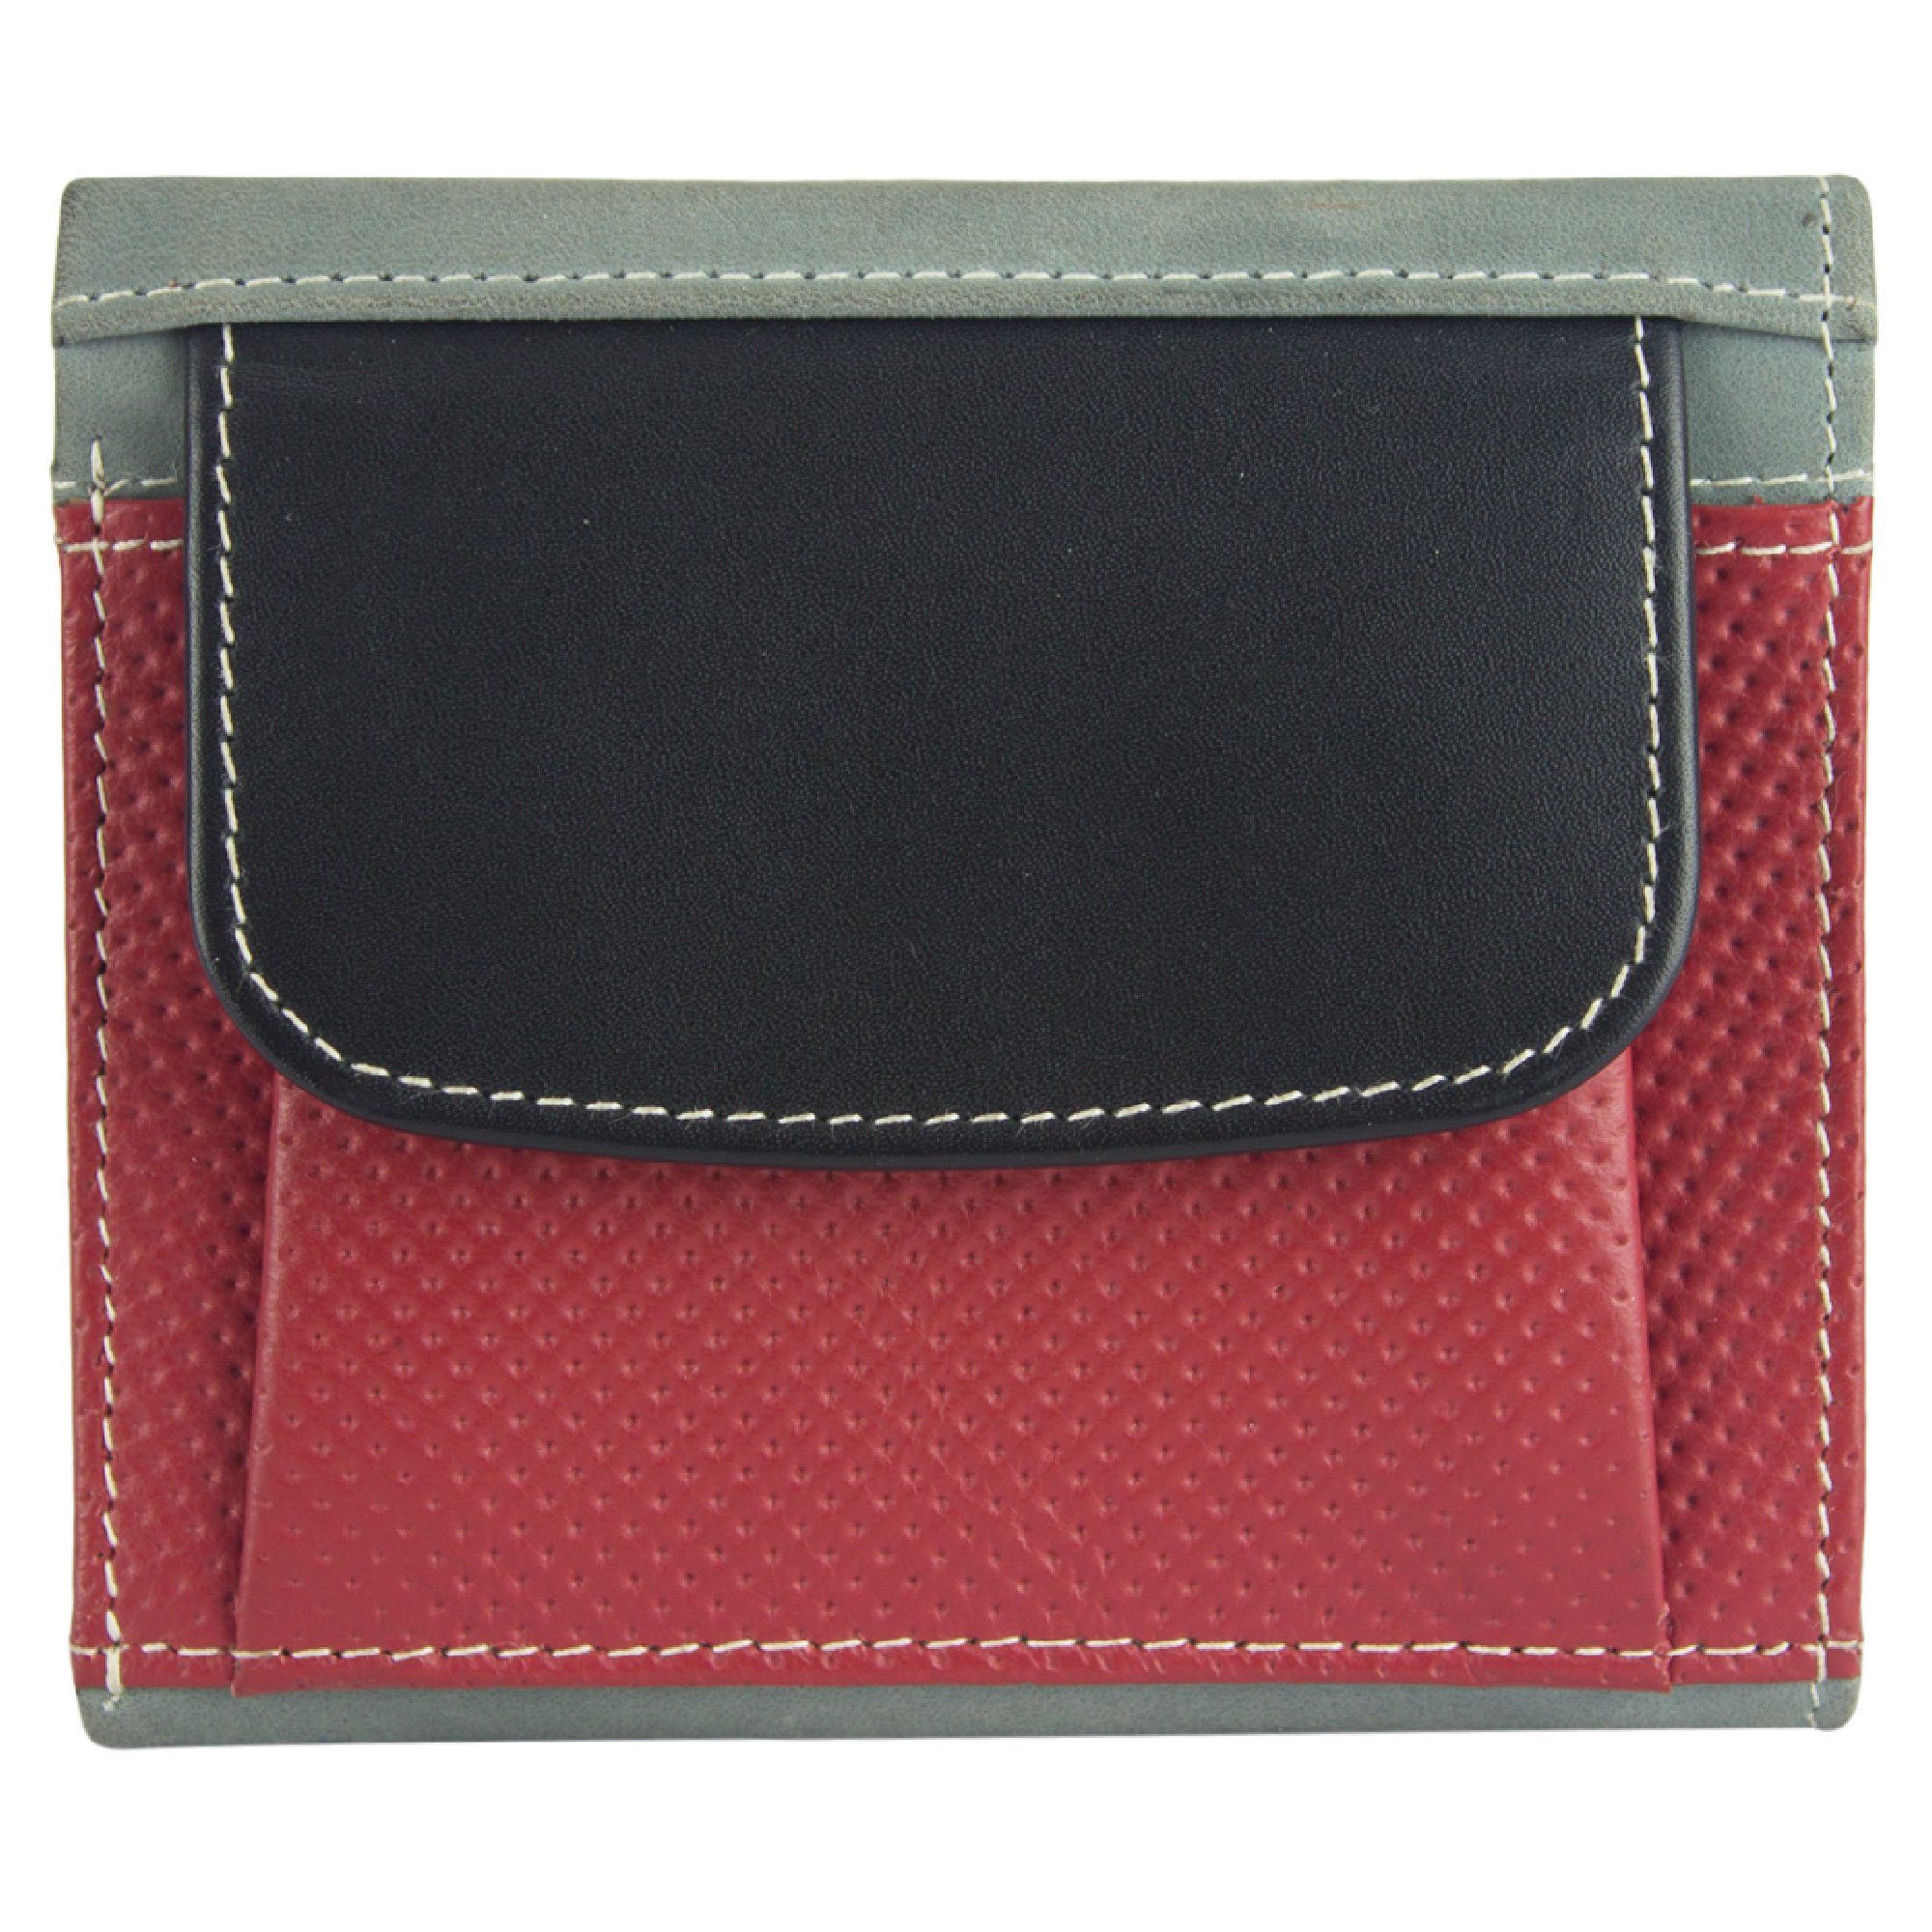 Sunsa Geldbörse echt Leder Geldbeutel Brieftasche klein Lederresten, grau/schwarz/rot Unisex aus recycelten echt RFID-Schutz, mit Damen, Leder, Portemonnaie